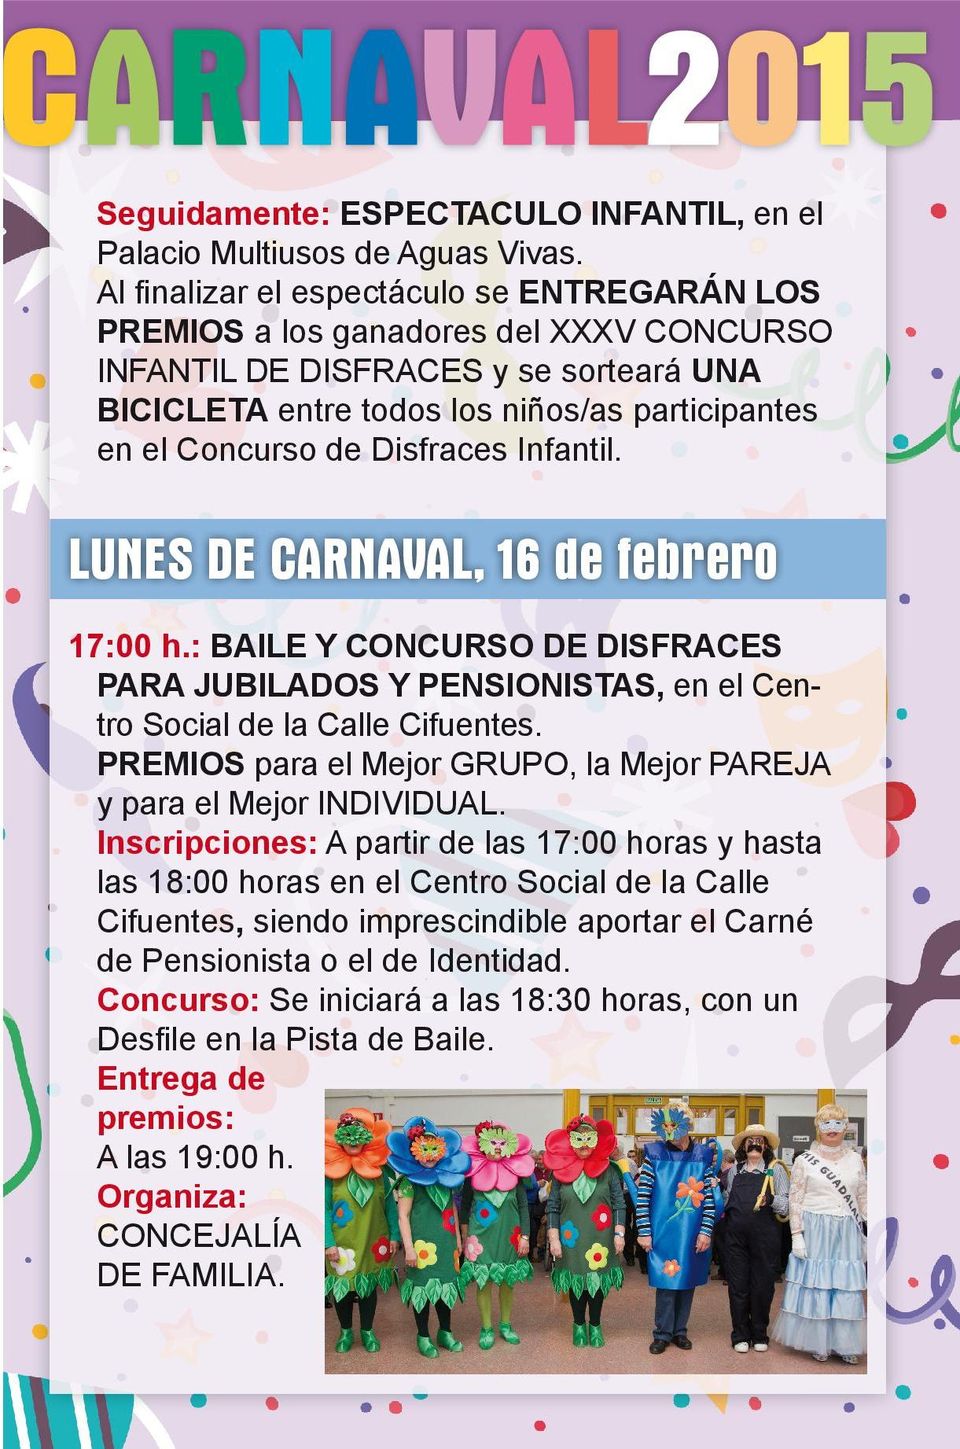 Disfraces Infantil. LUNES DE CARNAVAL, 16 de febrero 17:00 h.: BAILE Y CONCURSO DE DISFRACES PARA JUBILADOS Y PENSIONISTAS, en el Centro Social de la Calle Cifuentes.